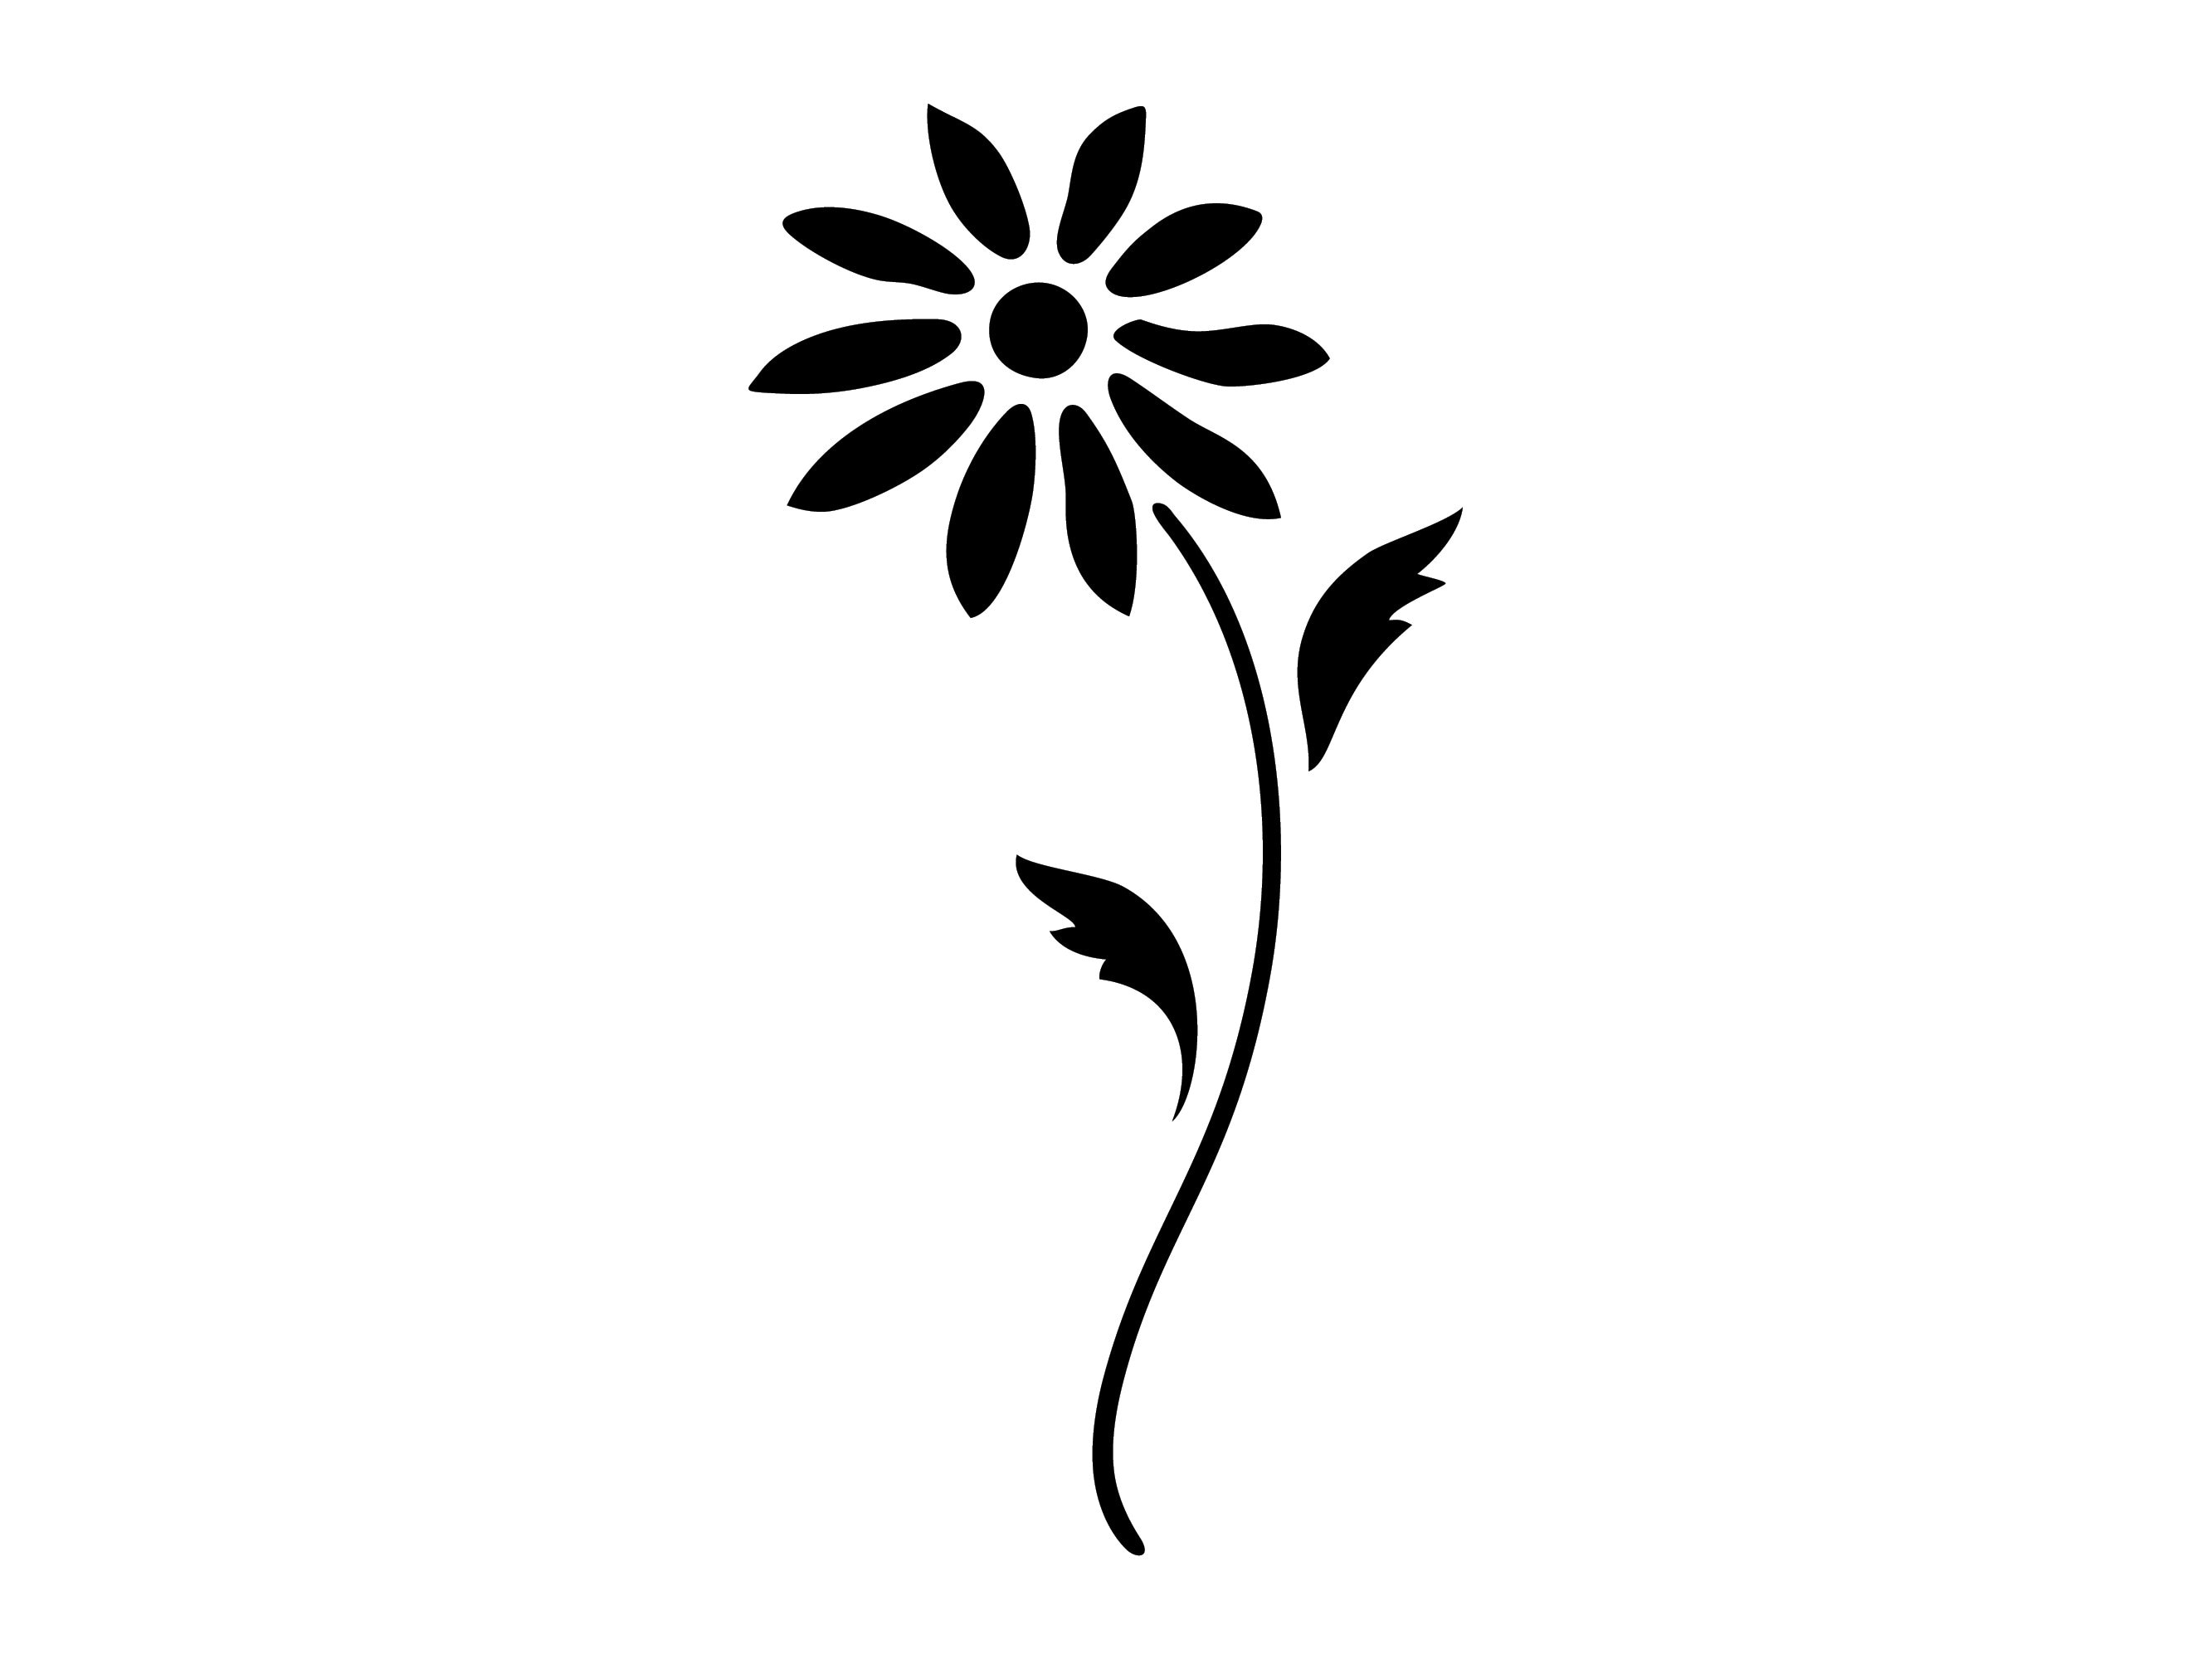 Daisy flower tiges réutilisables robuste 190 micron mylar stencil-A5-A4-A3 